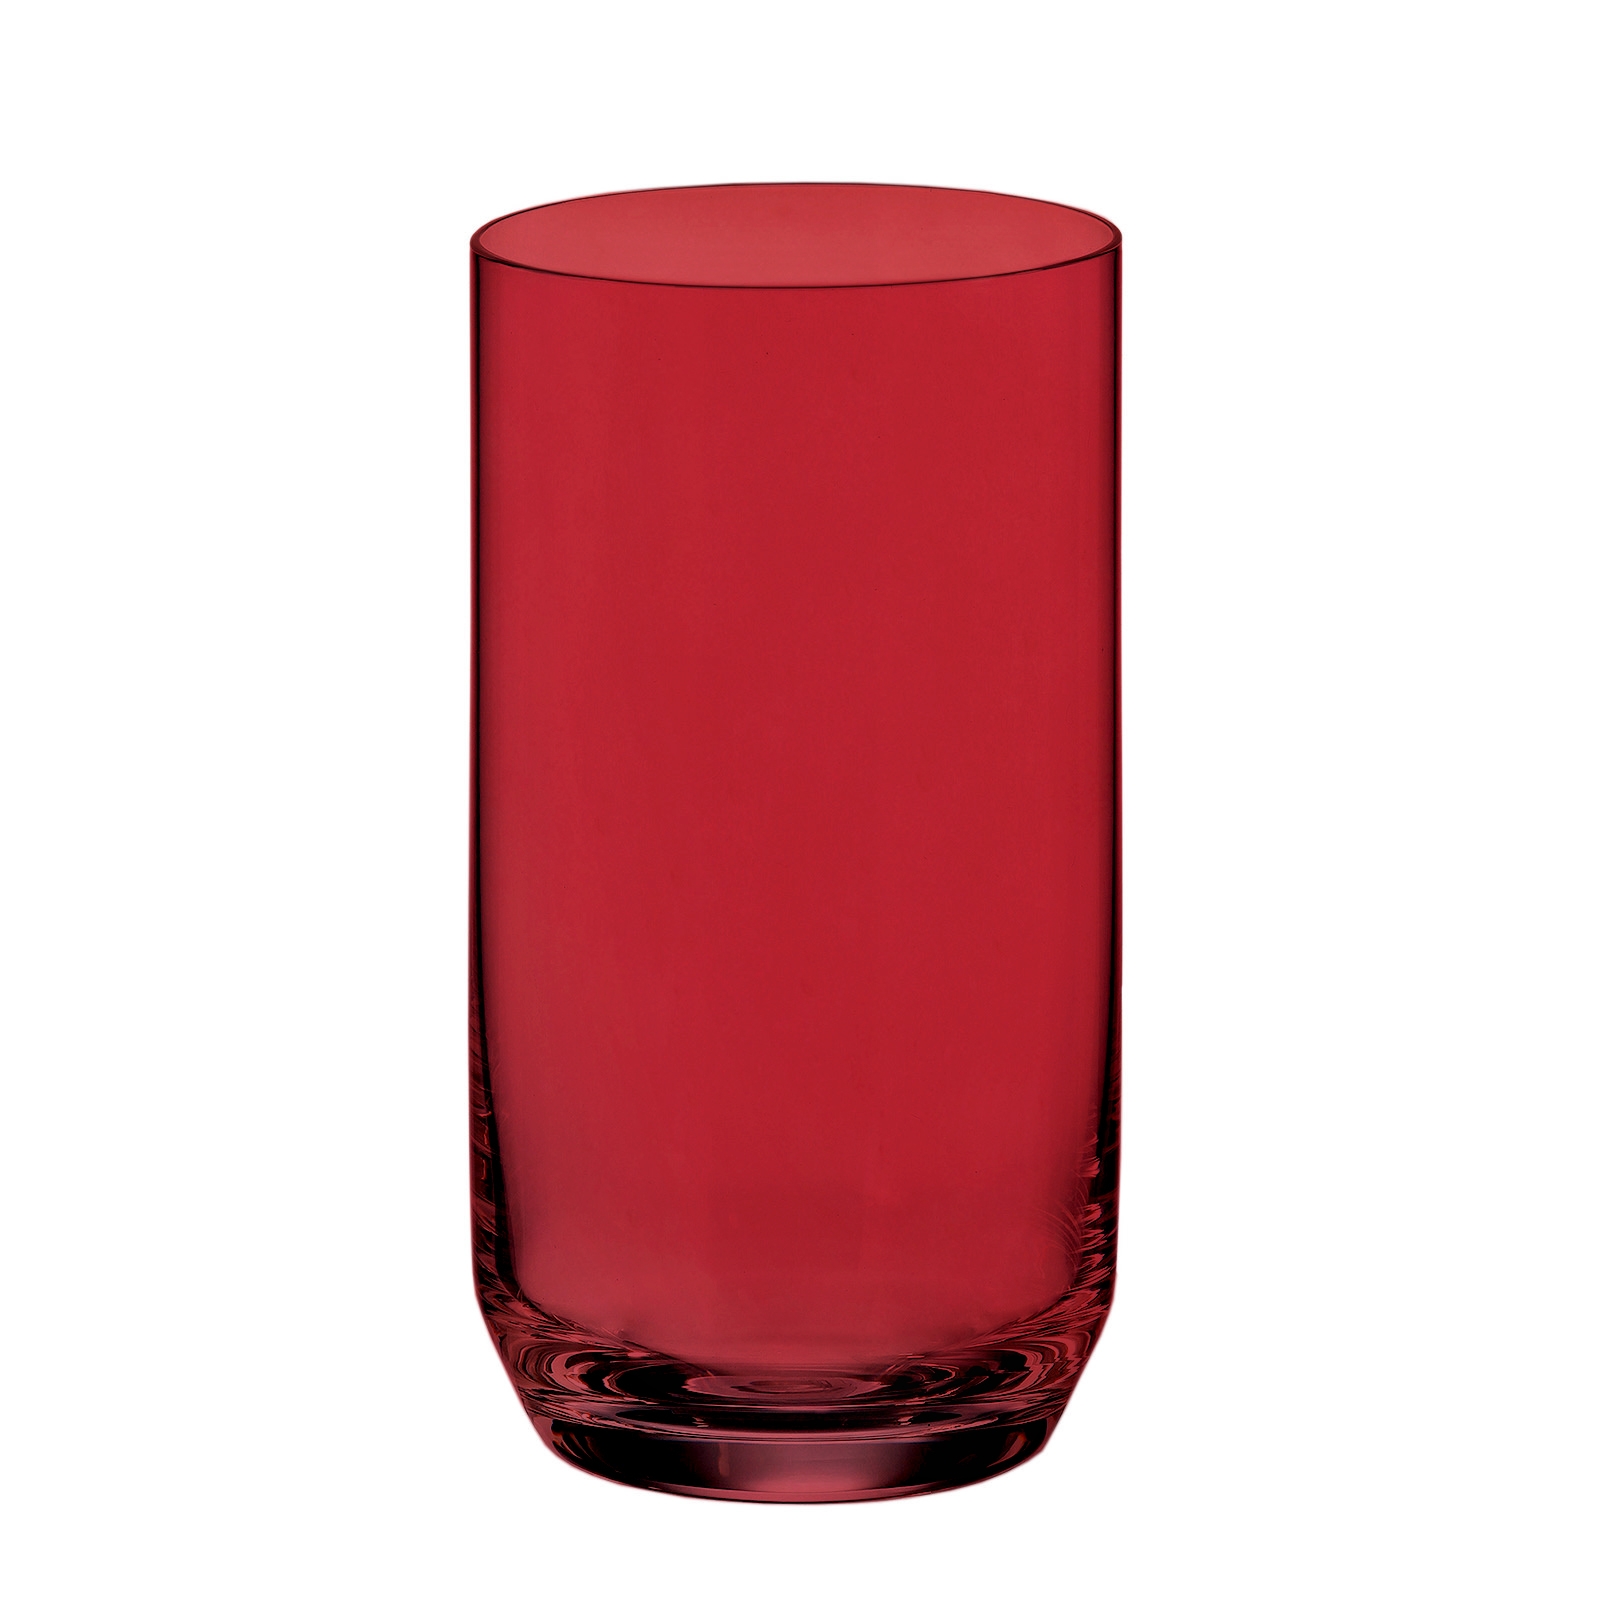 Ποτήρι Νερού Σετ 6τμχ Κρυστάλλινο Bohemia Red Ara 400ml (Υλικό: Κρύσταλλο, Χρώμα: Κόκκινο, Μέγεθος: Σωλήνας) – Κρύσταλλα Βοημίας – CTB2SF107240